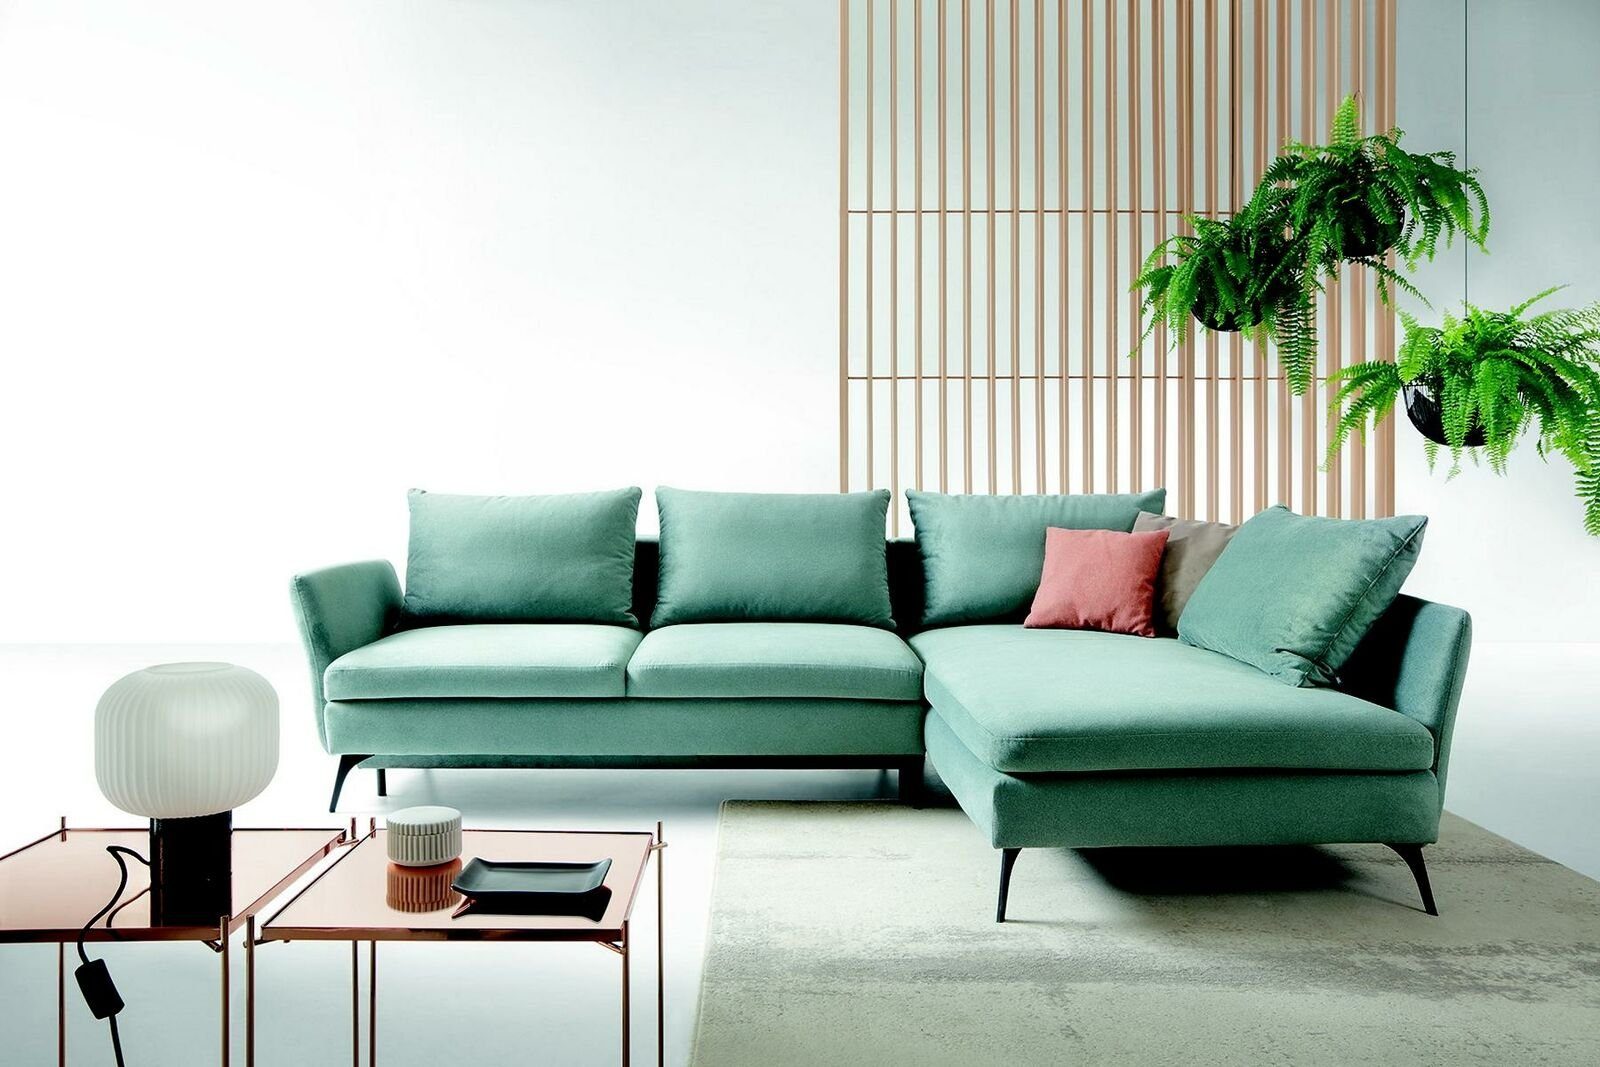 JVmoebel Ecksofa, Wohnzimmer Grün Möbel Textil Sofas Ecksofa L Form Couch